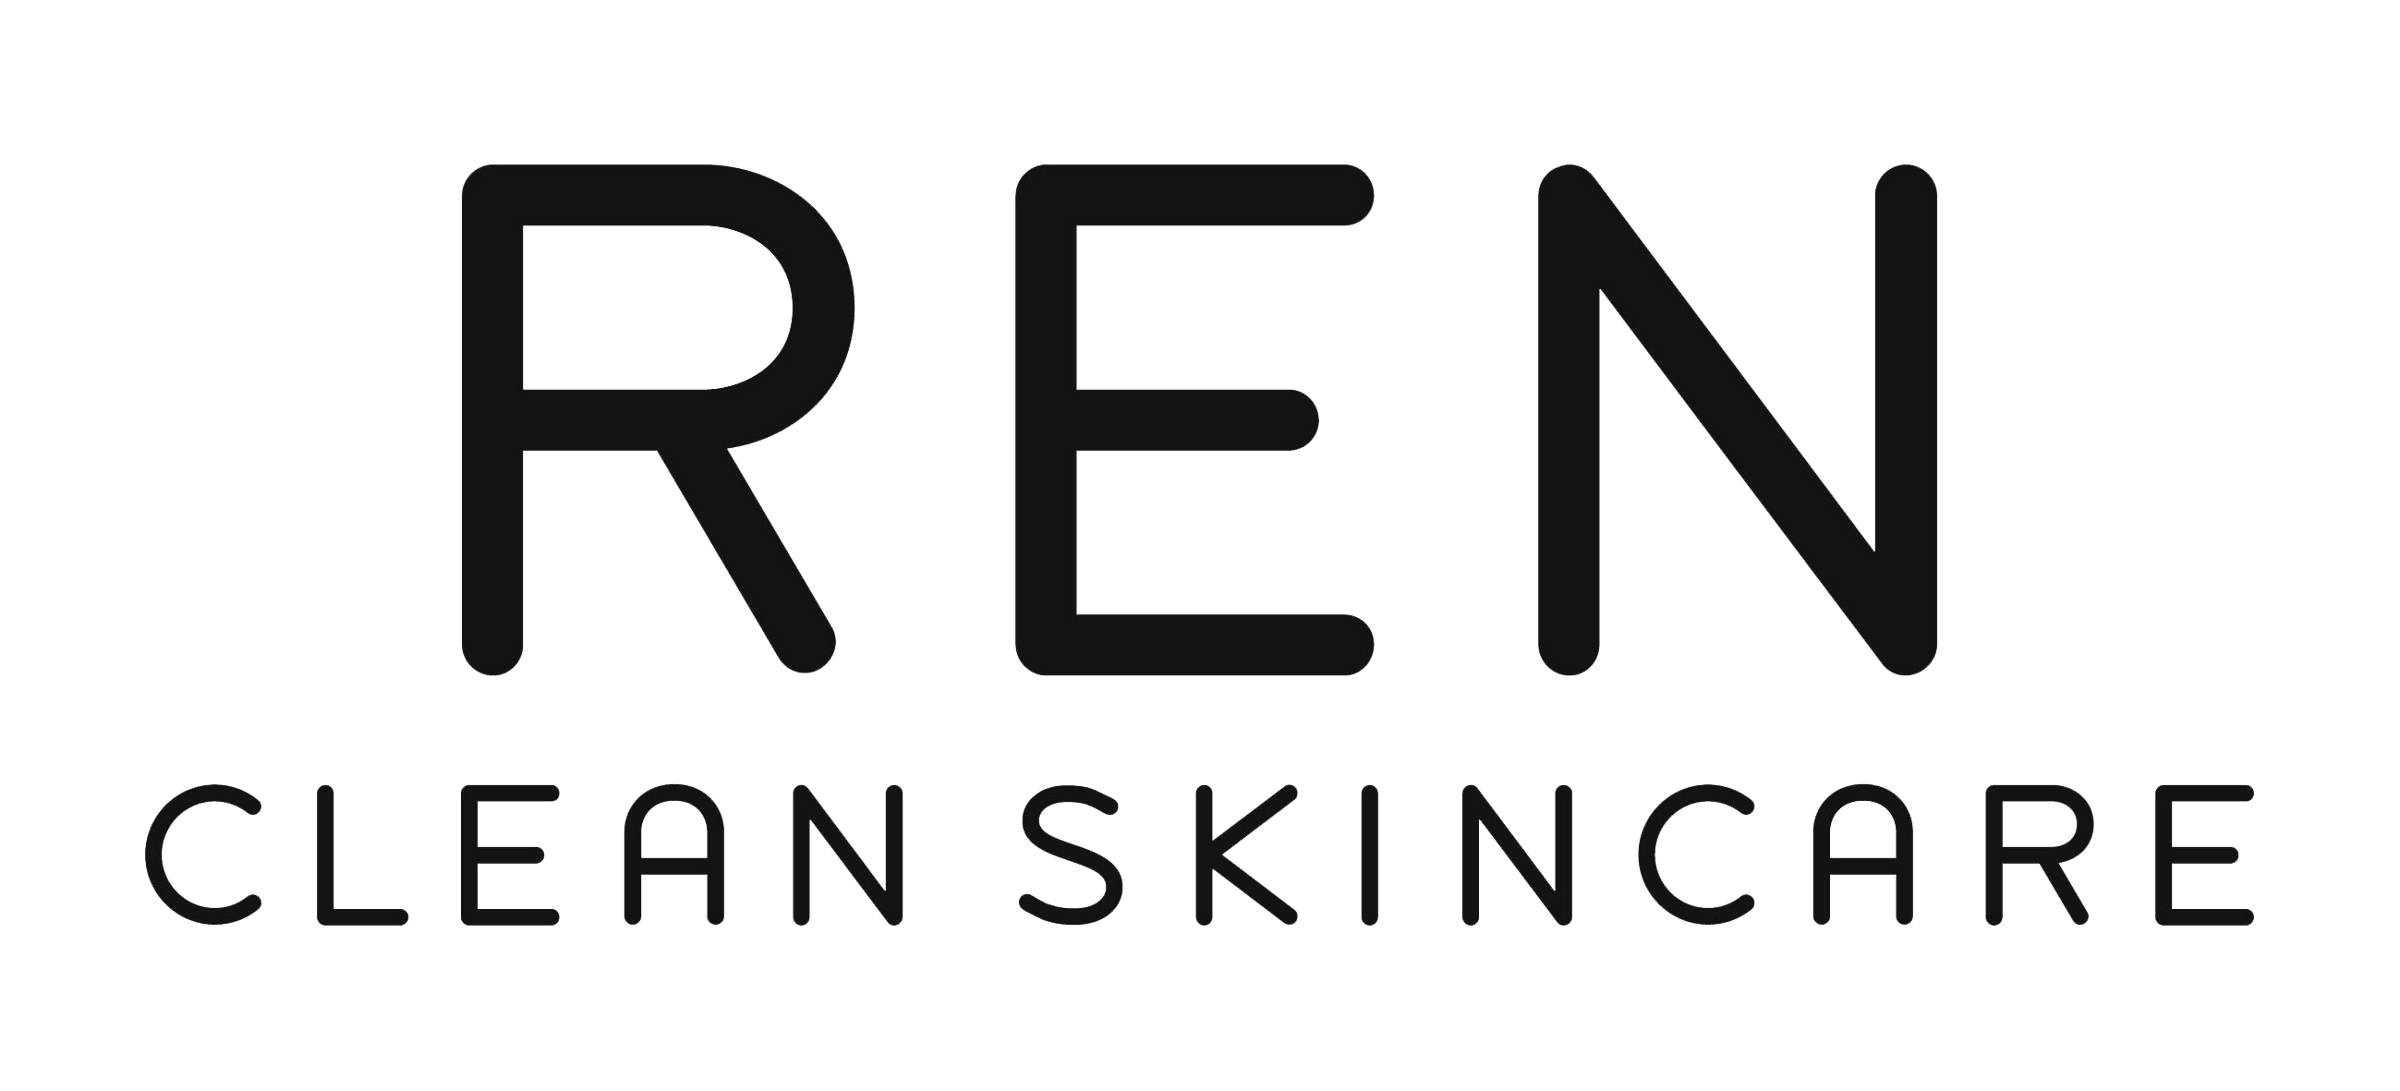 Ren logo